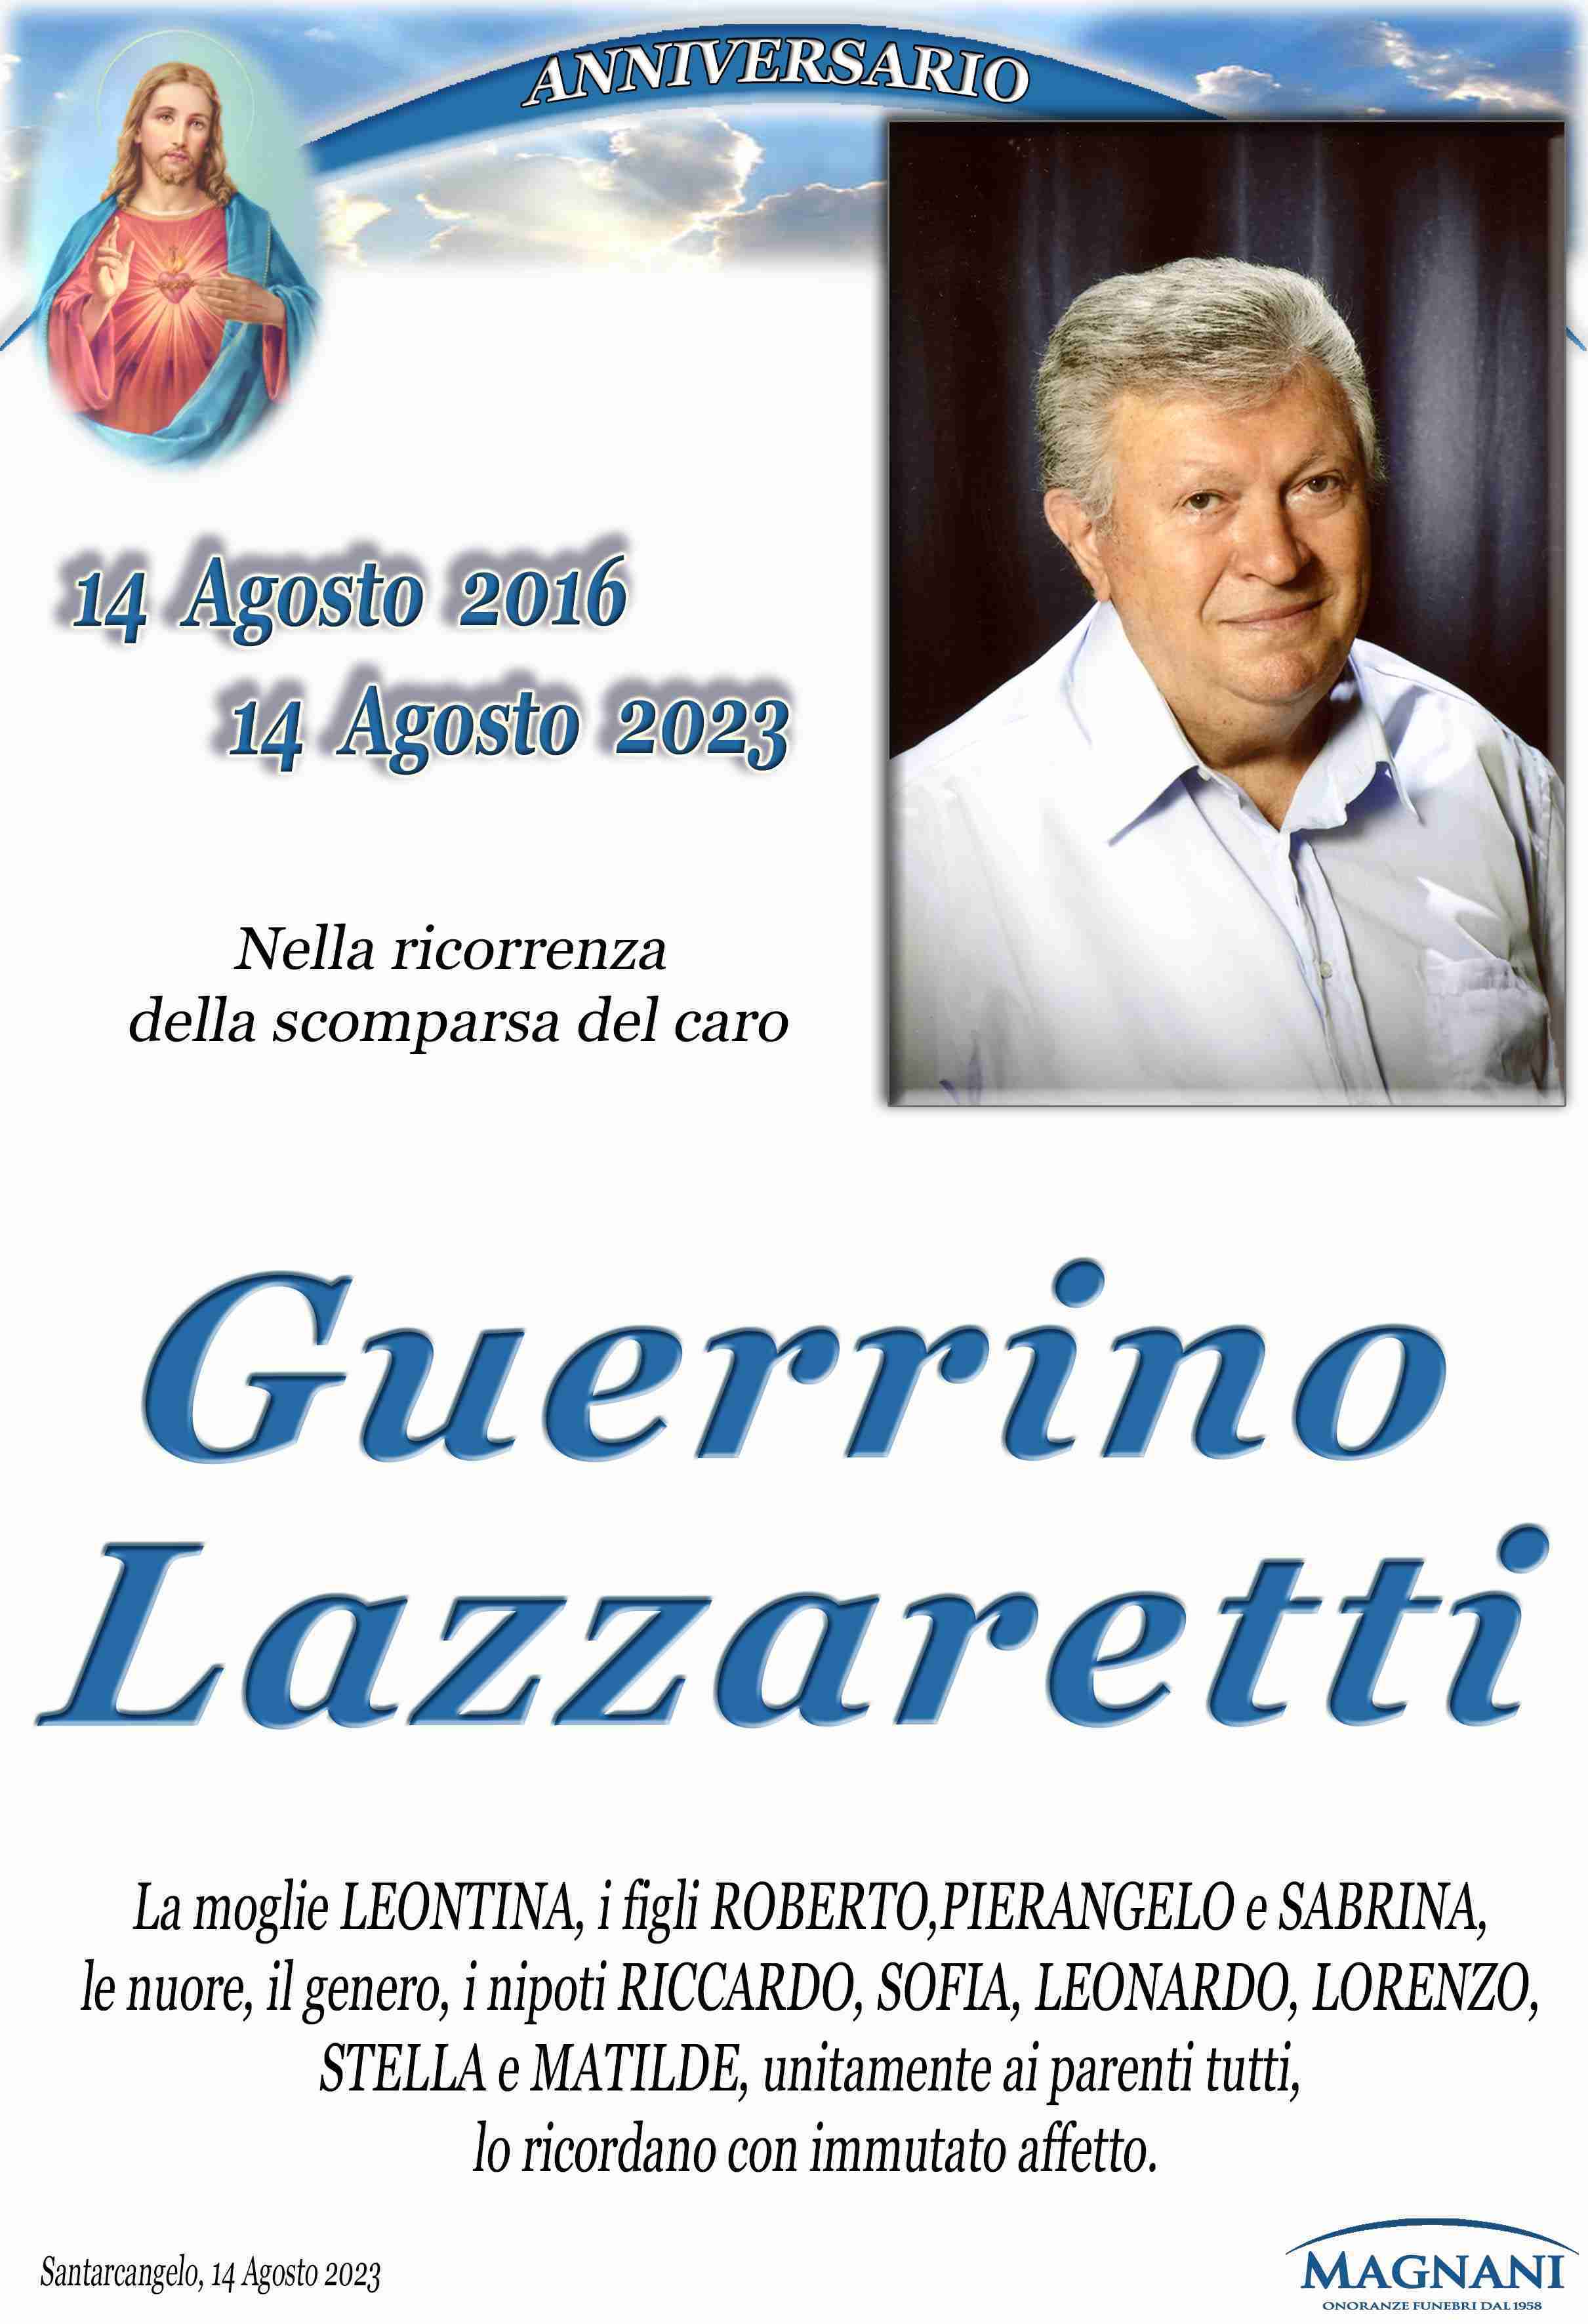 Guerrino Lazzaretti